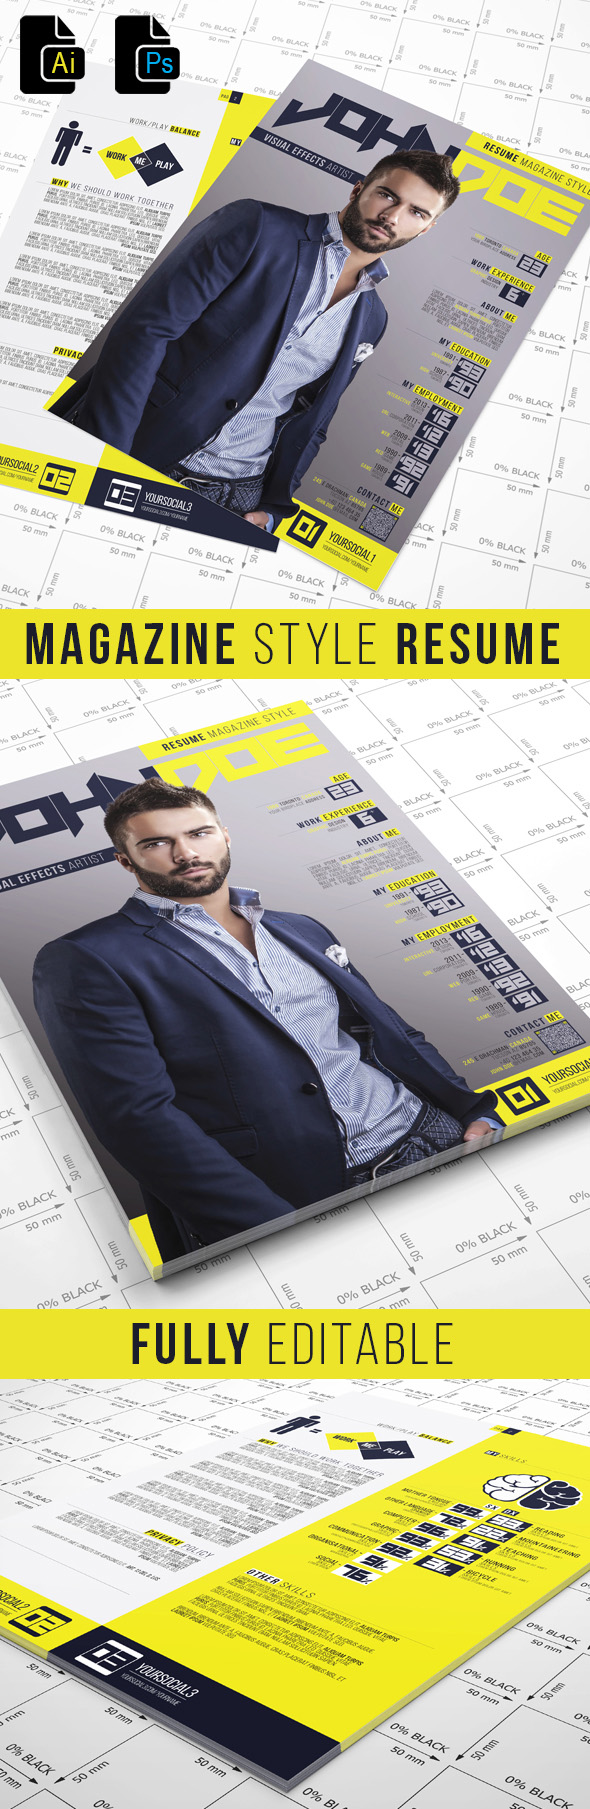 Magazine Style Resume